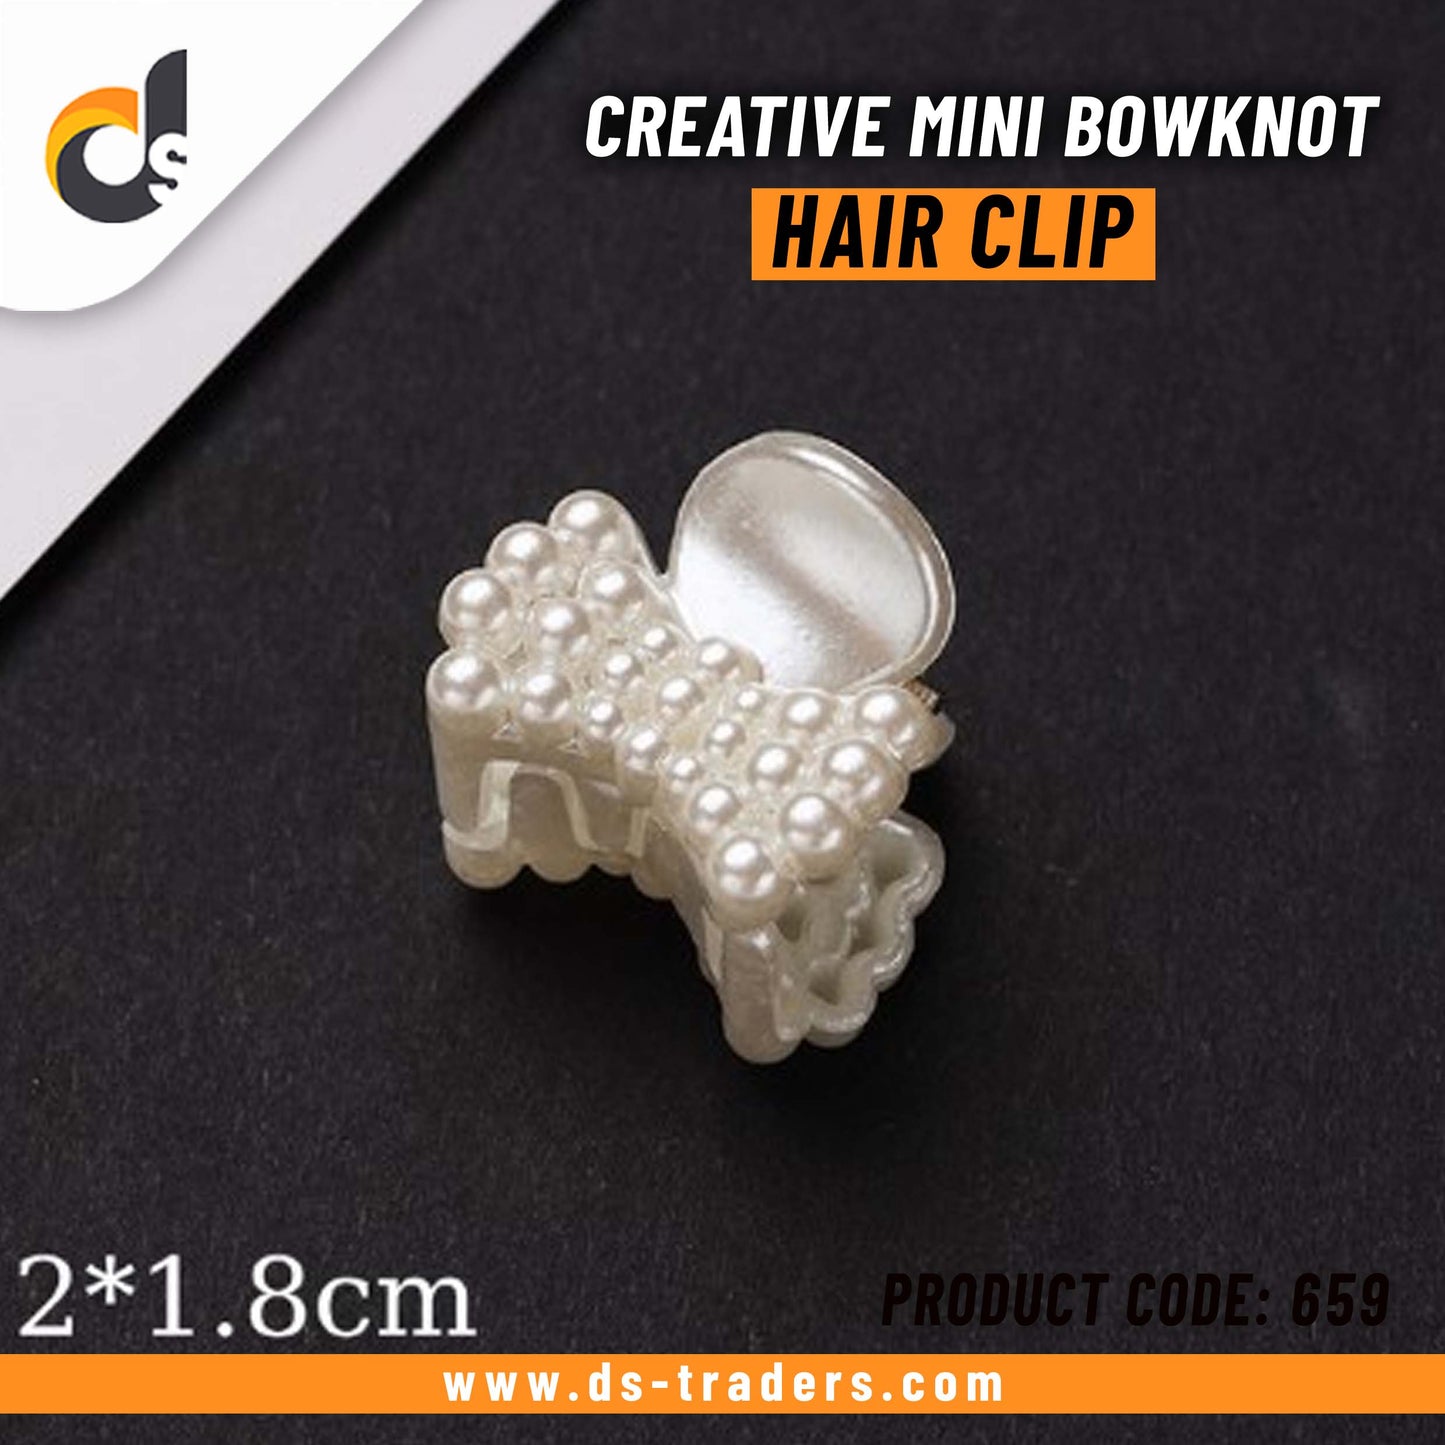 Creative Mini Bowknot Hair Clip